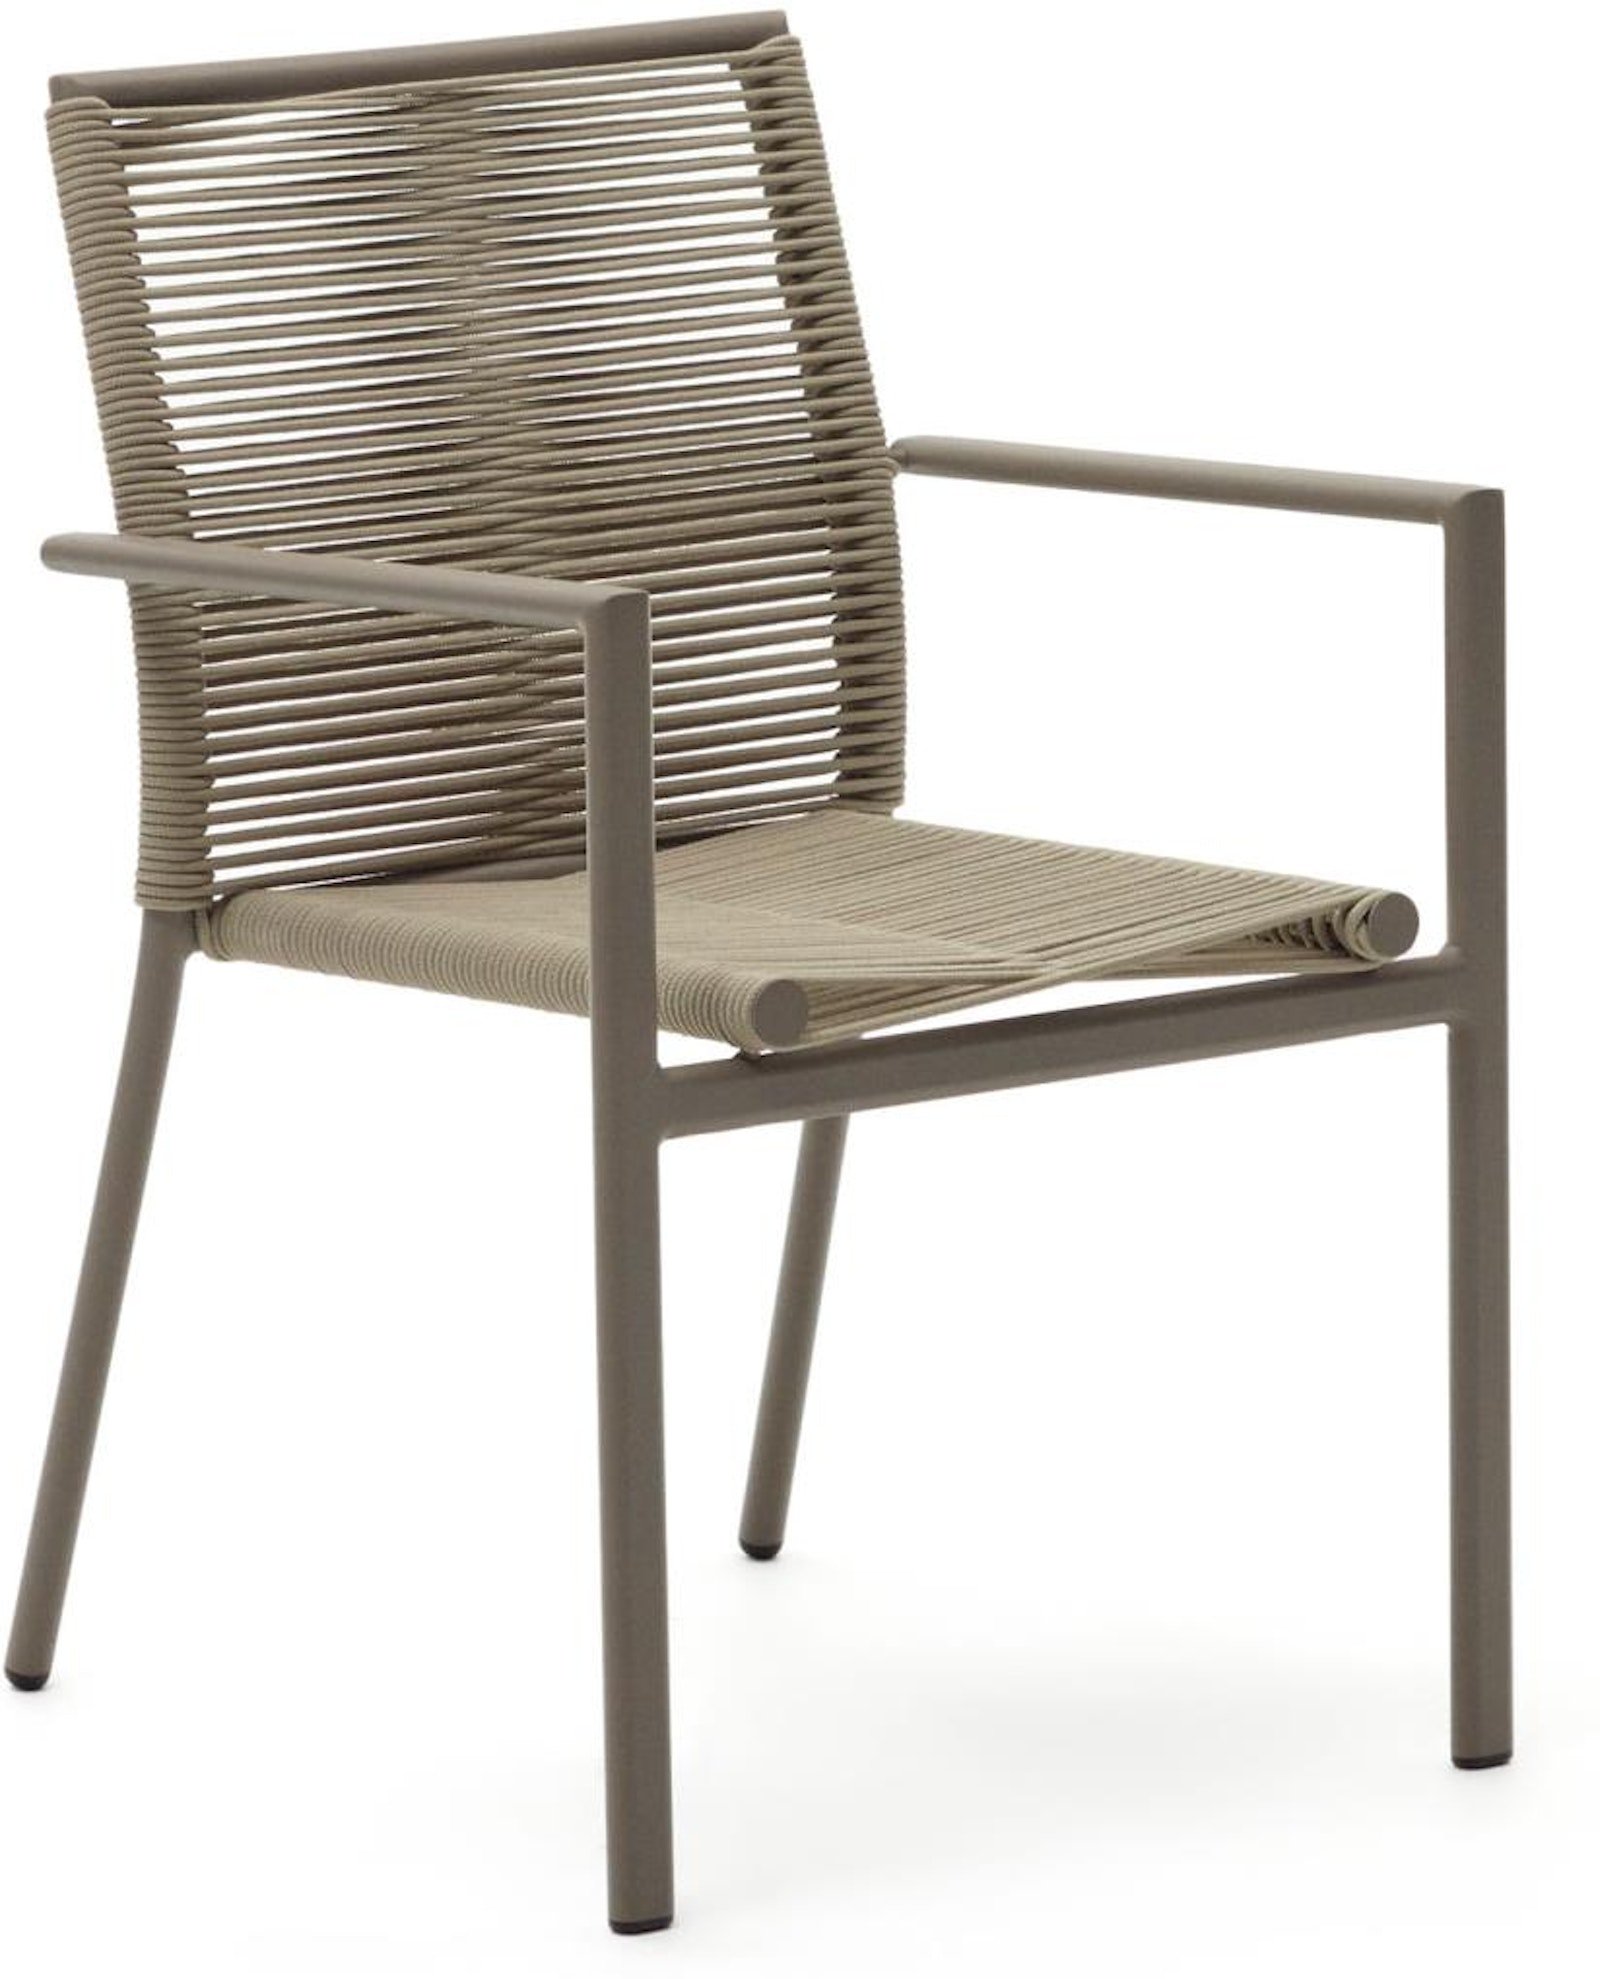 Culip, Udendørs stol, moderne, nordisk, reb by Laforma (H: 84 cm. x B: 56 cm. x L: 60 cm., Brun/Beige)